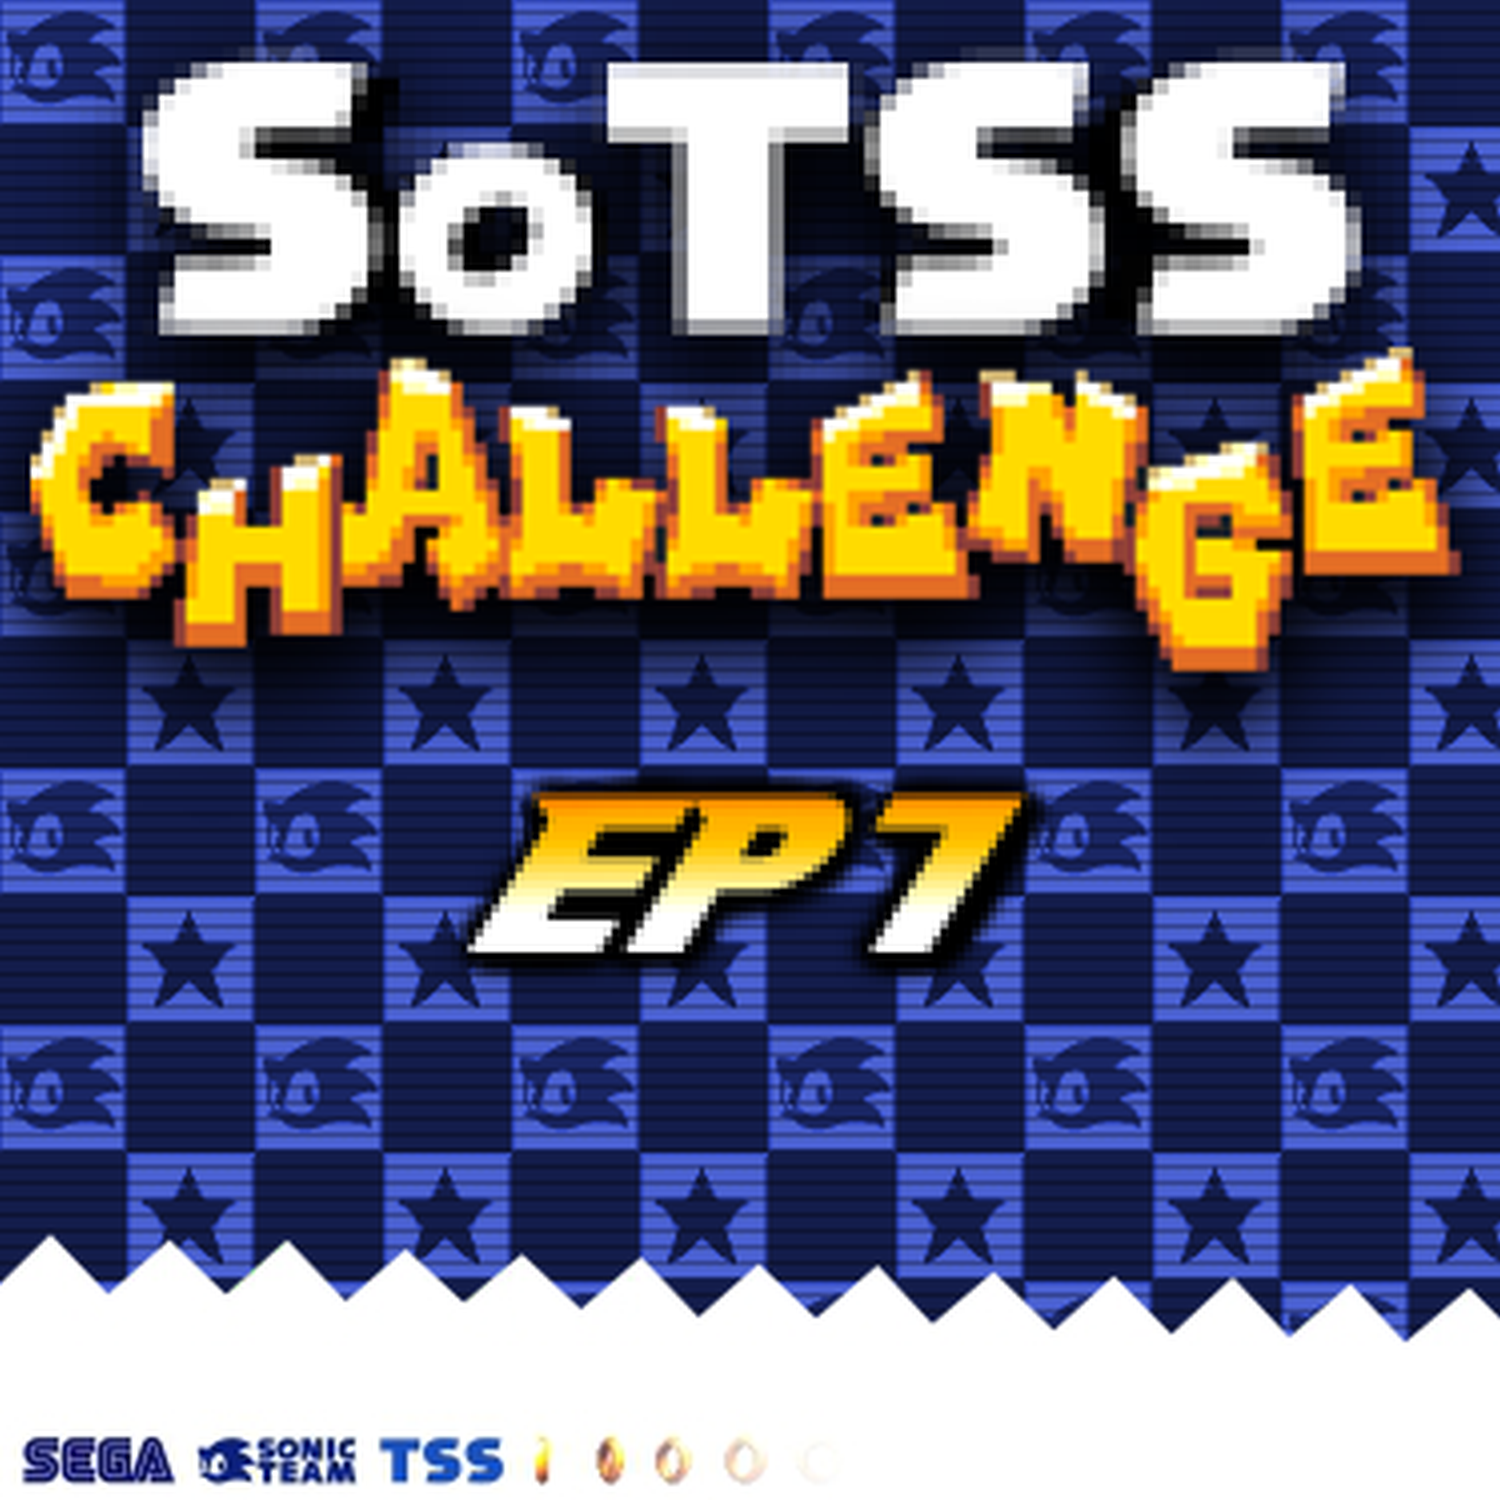 Sound of the Sonic Stadium Challenge EP 1